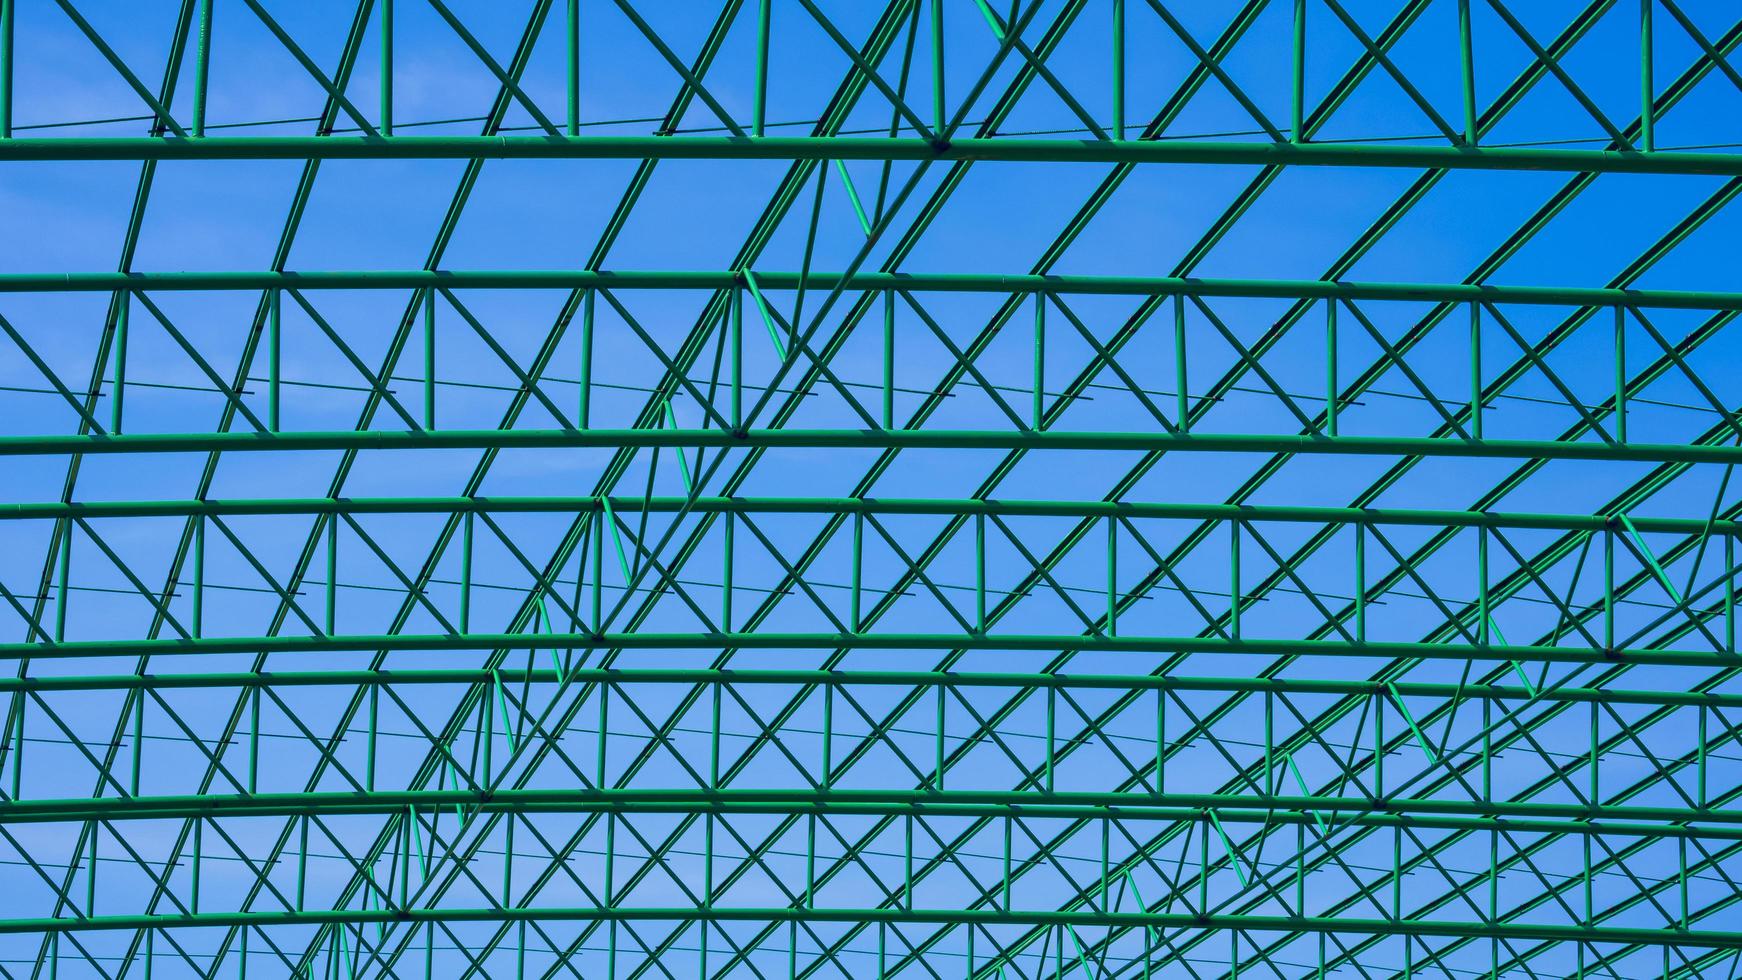 padrão geométrico da estrutura do telhado de metal verde do edifício industrial contra o fundo do céu azul foto